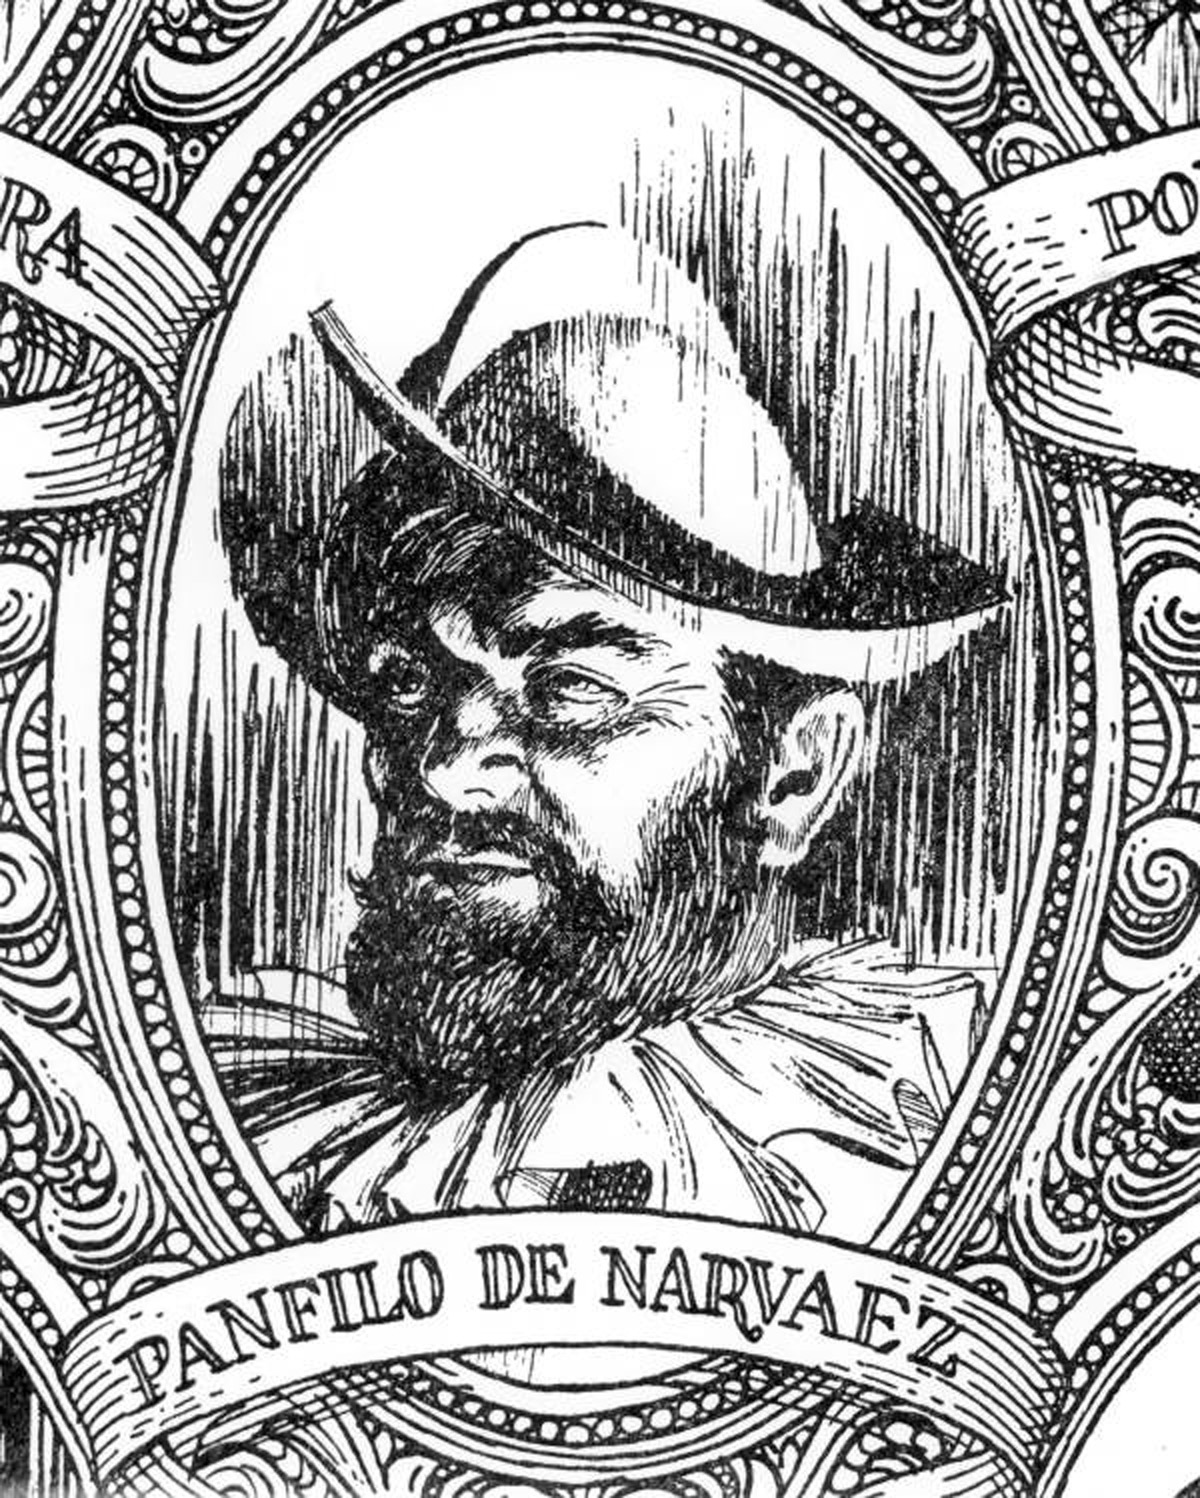 Pánfilo de Narváez, Archivos del estado de Florida,  Colección Fotográfica, No. K0250036